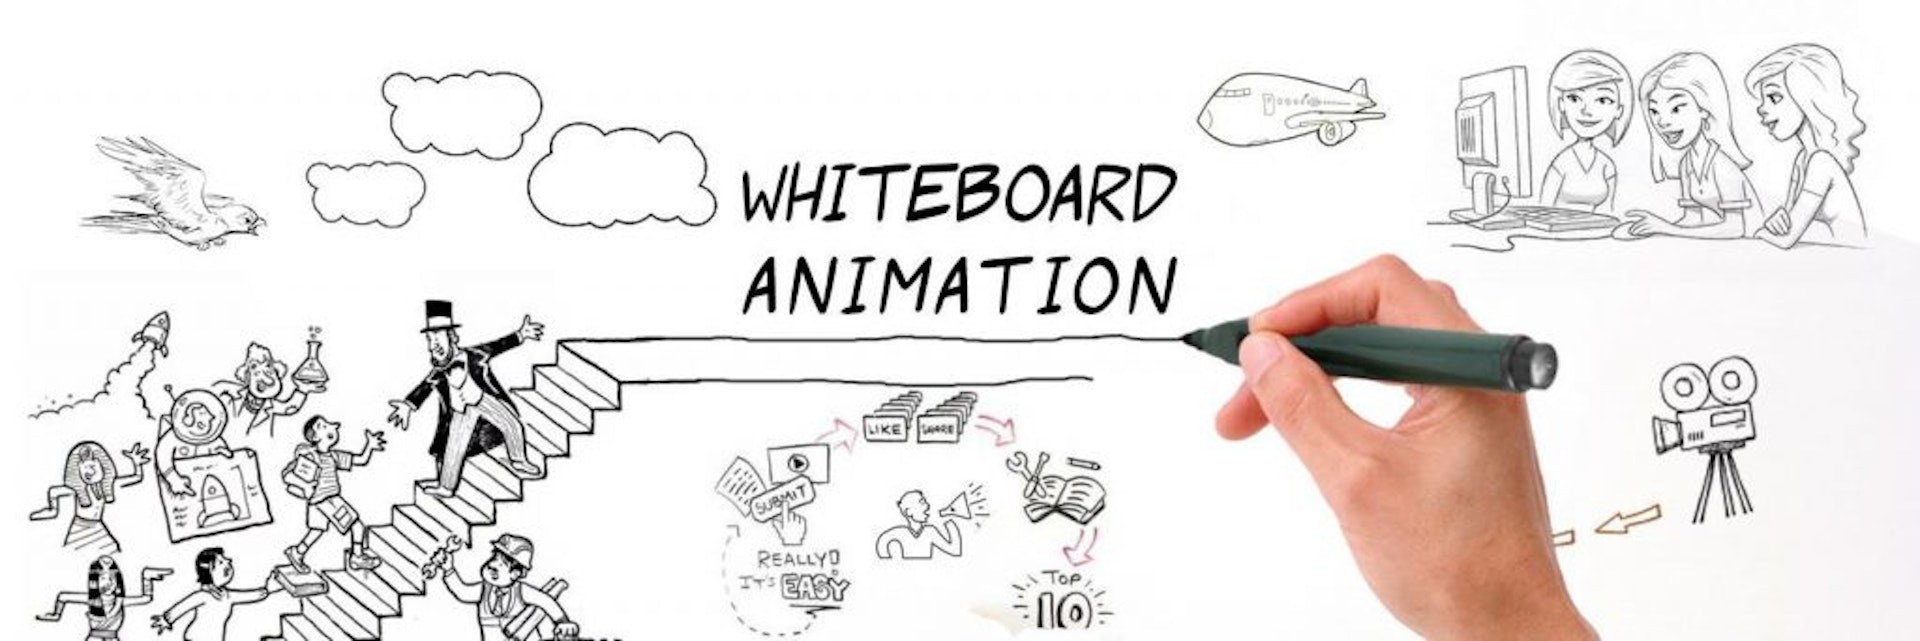 Qué es el whiteboard video y por qué deberías empezar a utilizarlo